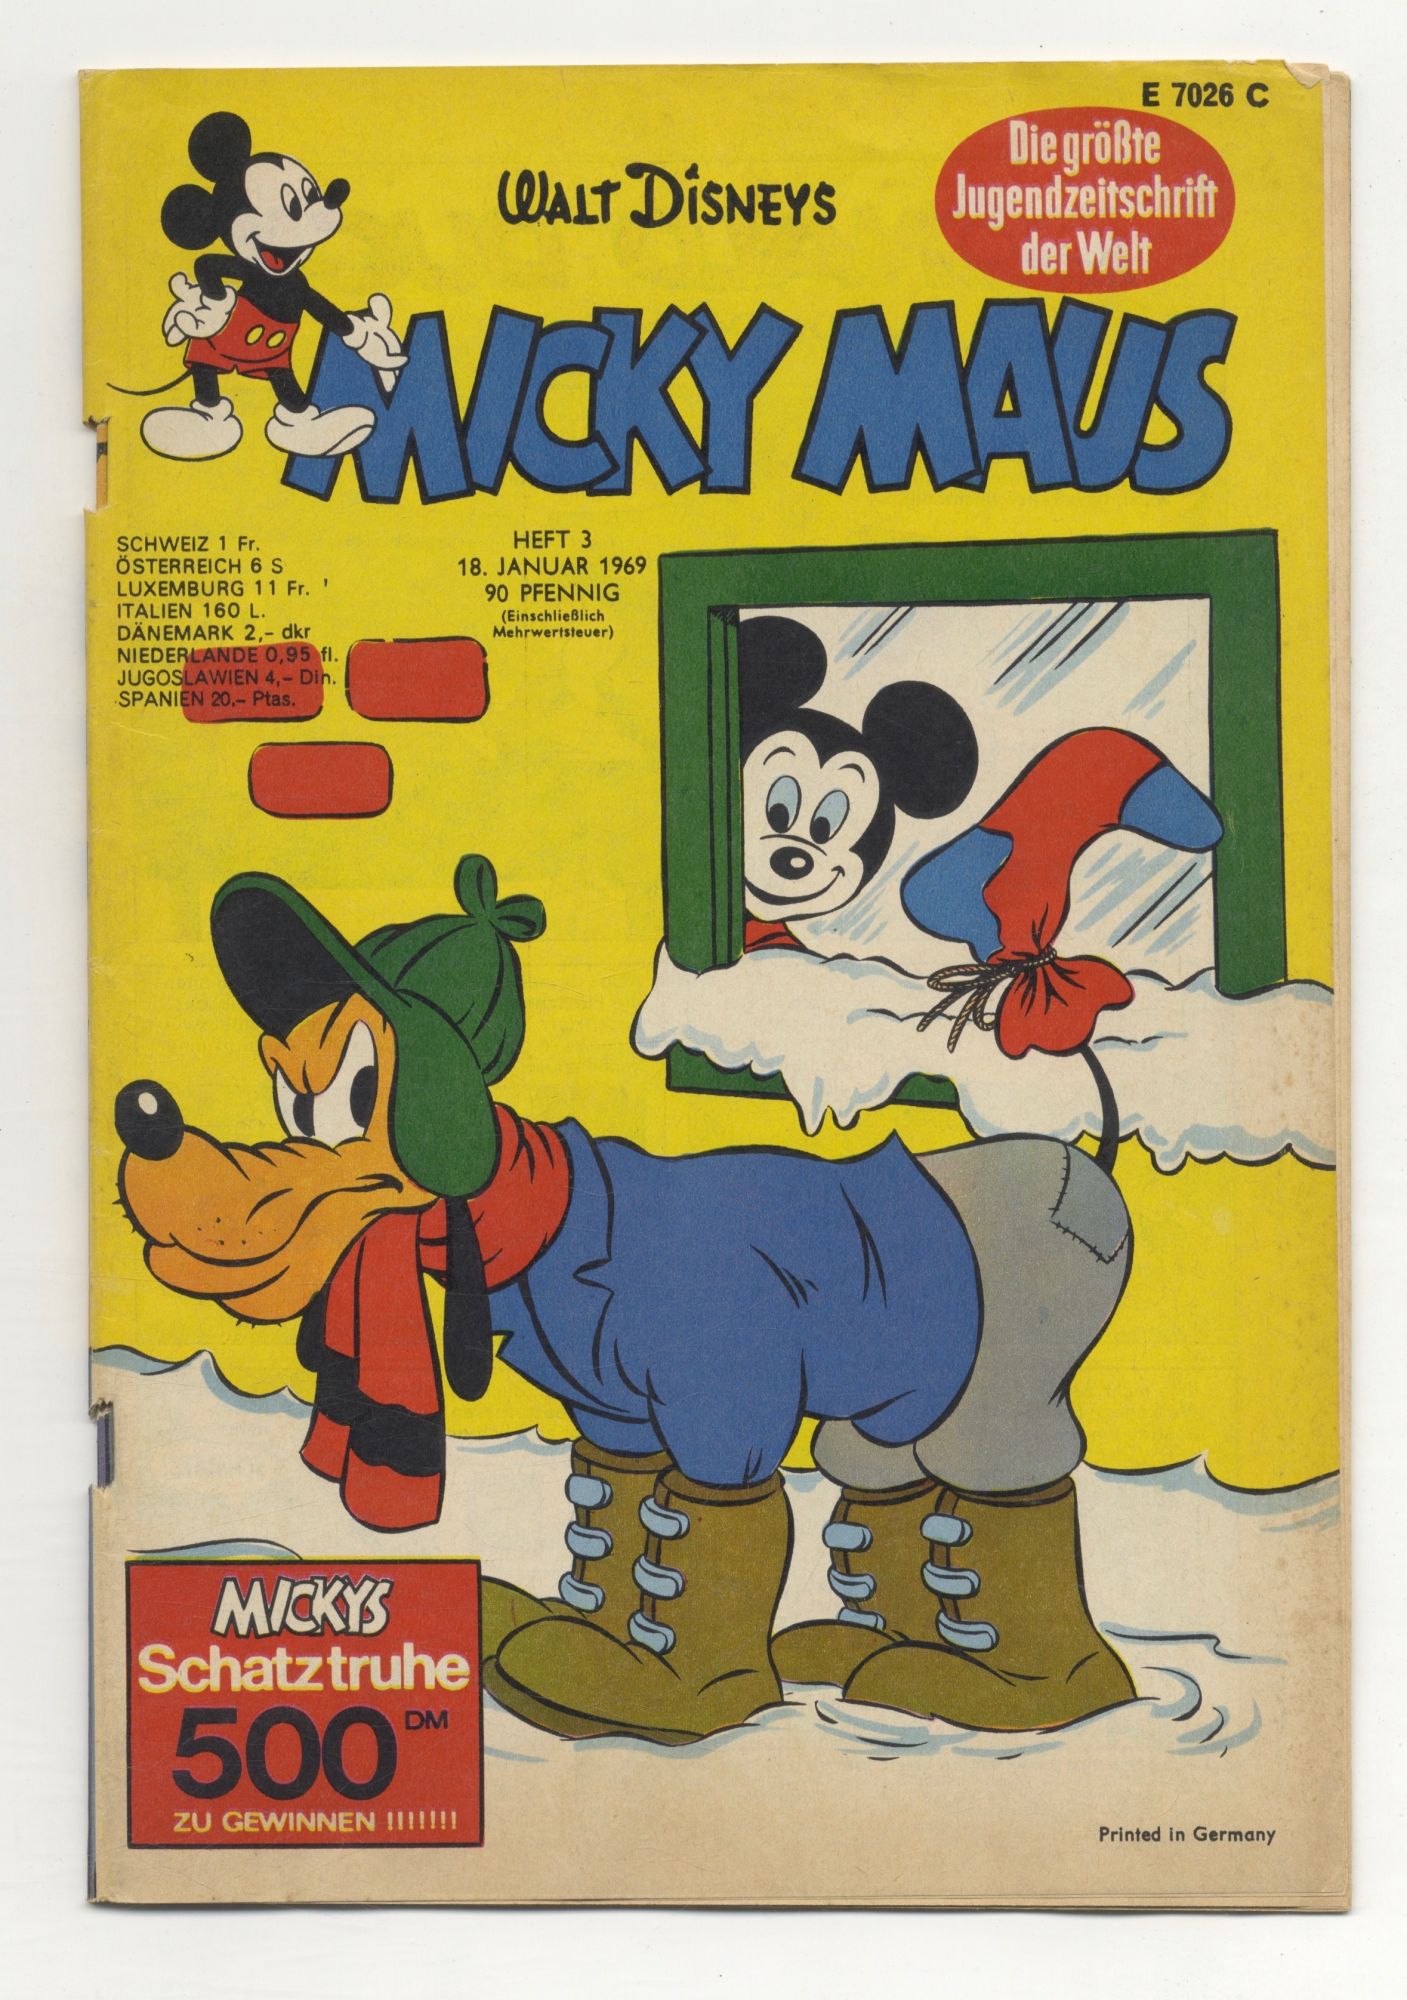 Micky Maus: Die Größte Jugendzeitschrift Der Welt - 1st Edition/1st  Printing by Walt Disney on Books Tell You Why, Inc